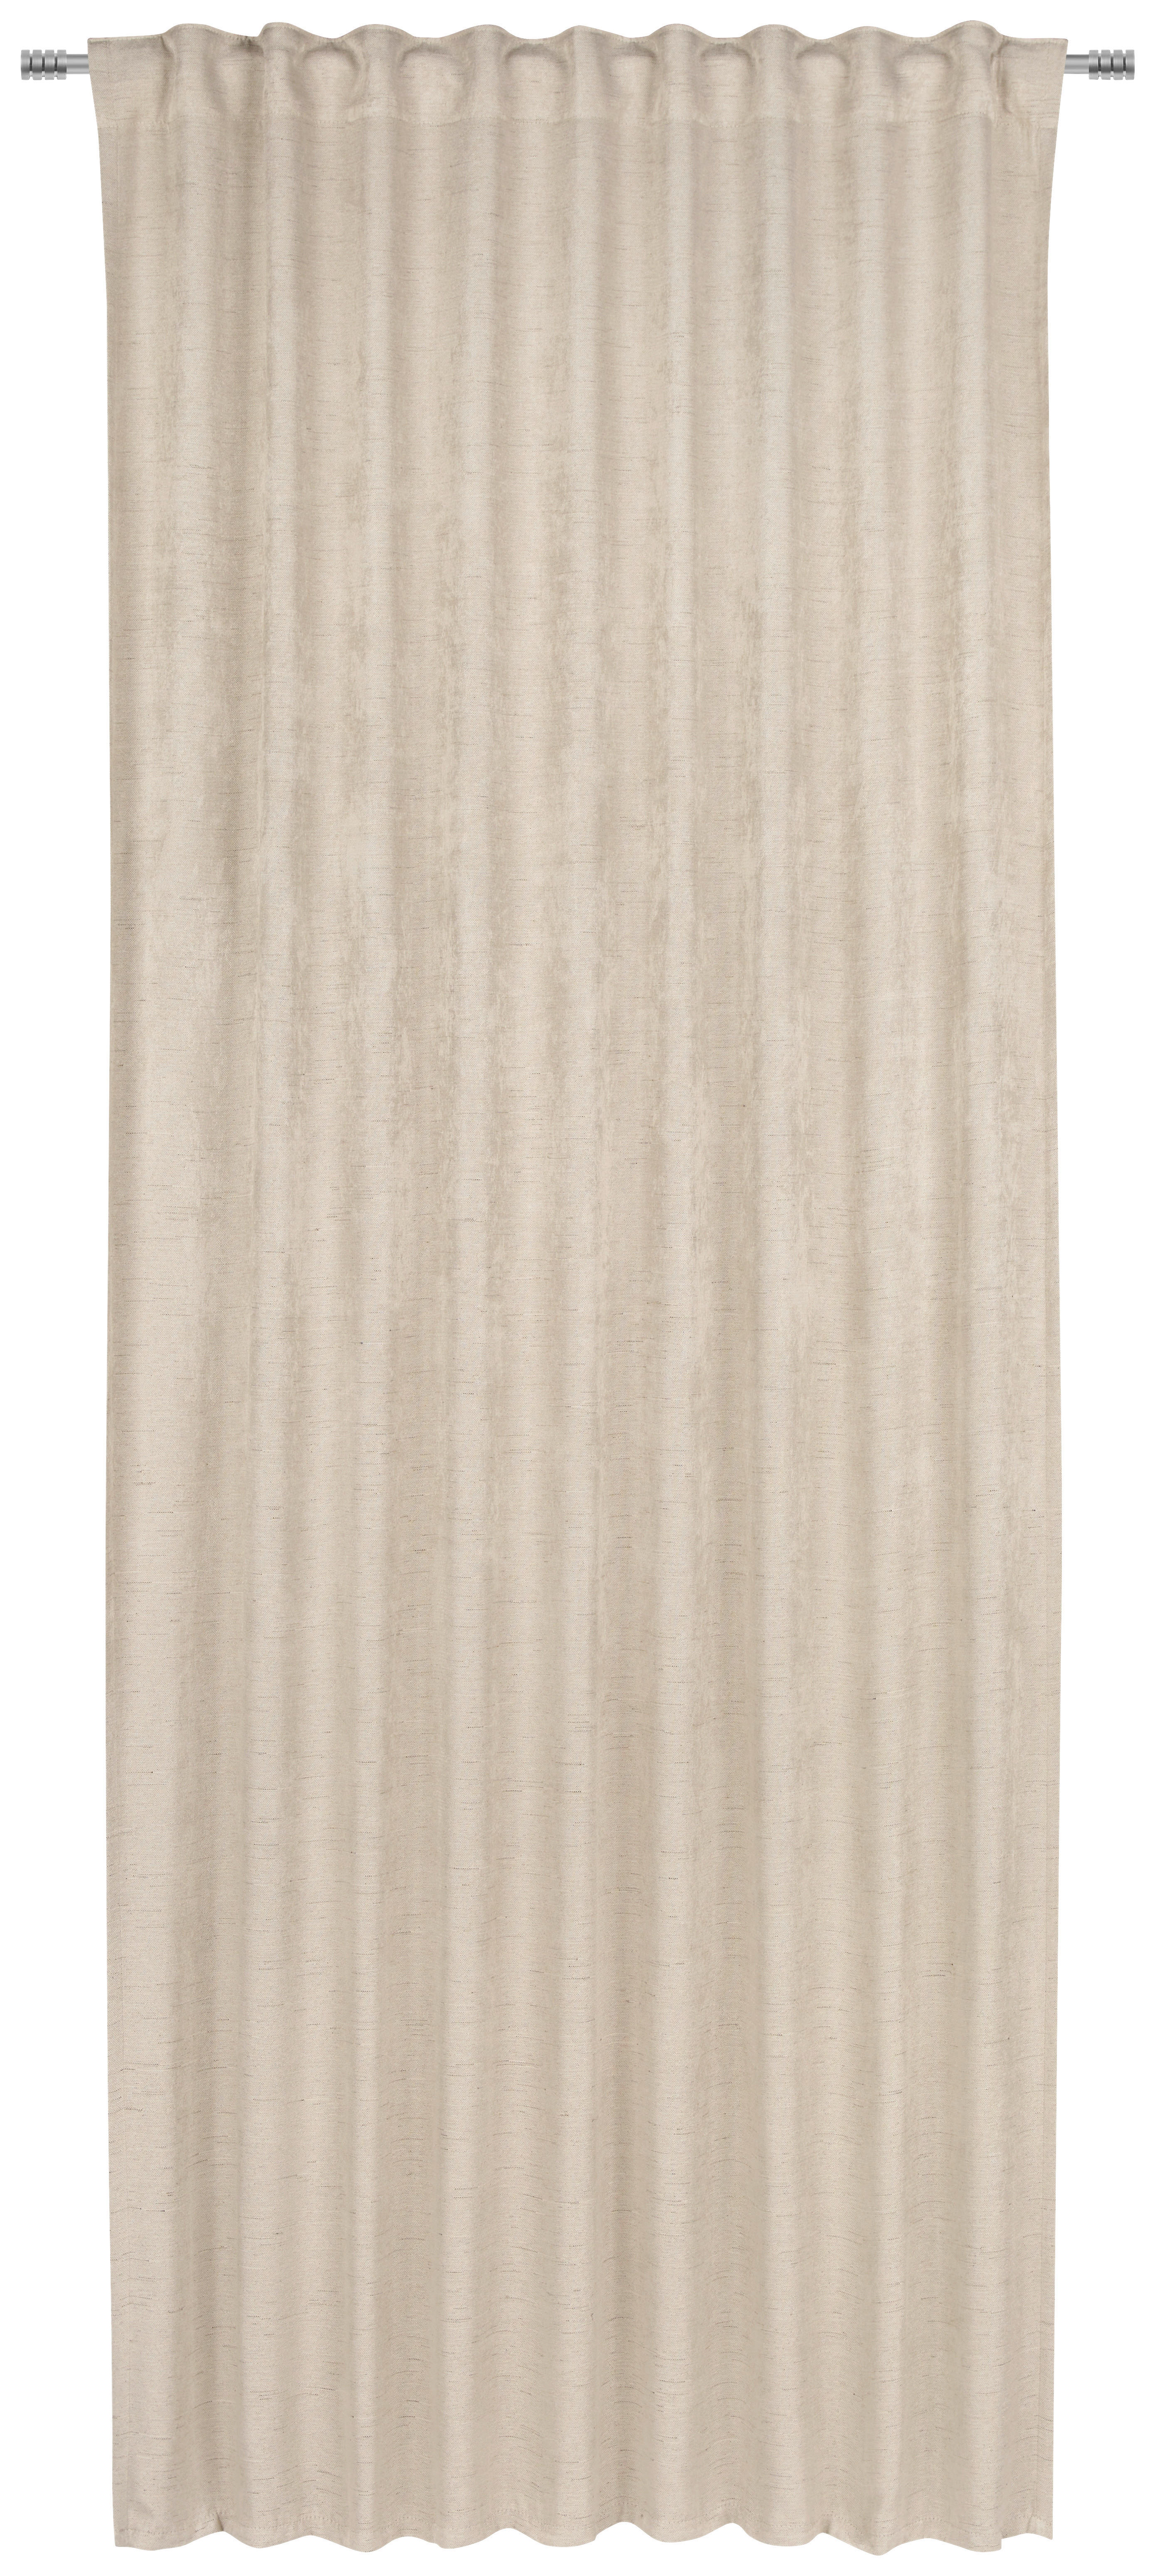 GARDINLÄNGD mörkläggning  - naturfärgad, Klassisk, textil (135/245cm) - Esposa